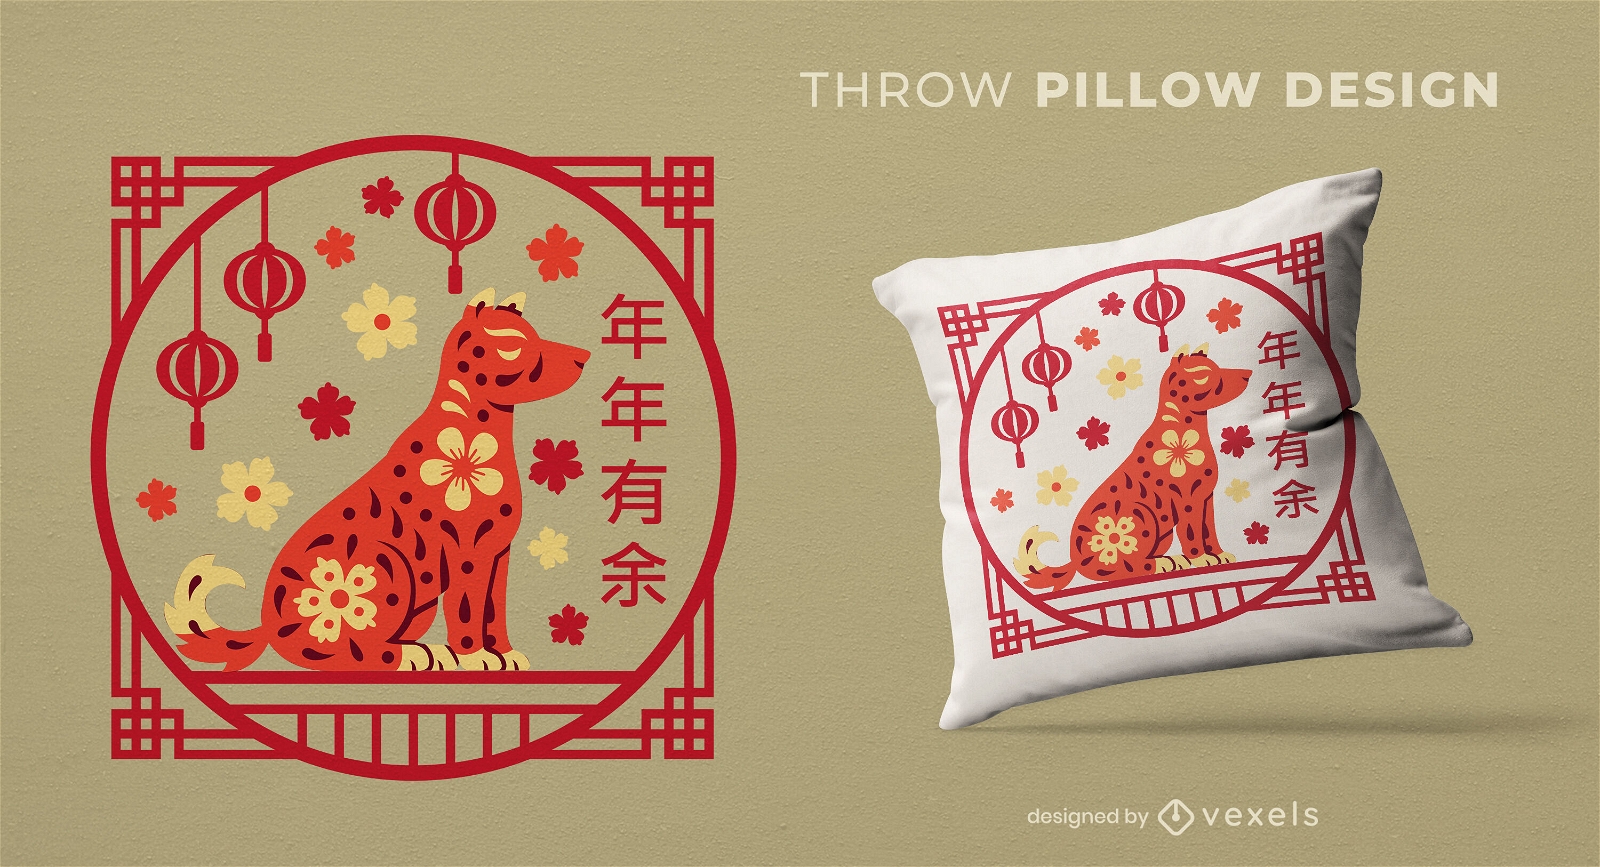 Diseño de almohada de celebración del perro del año nuevo chino